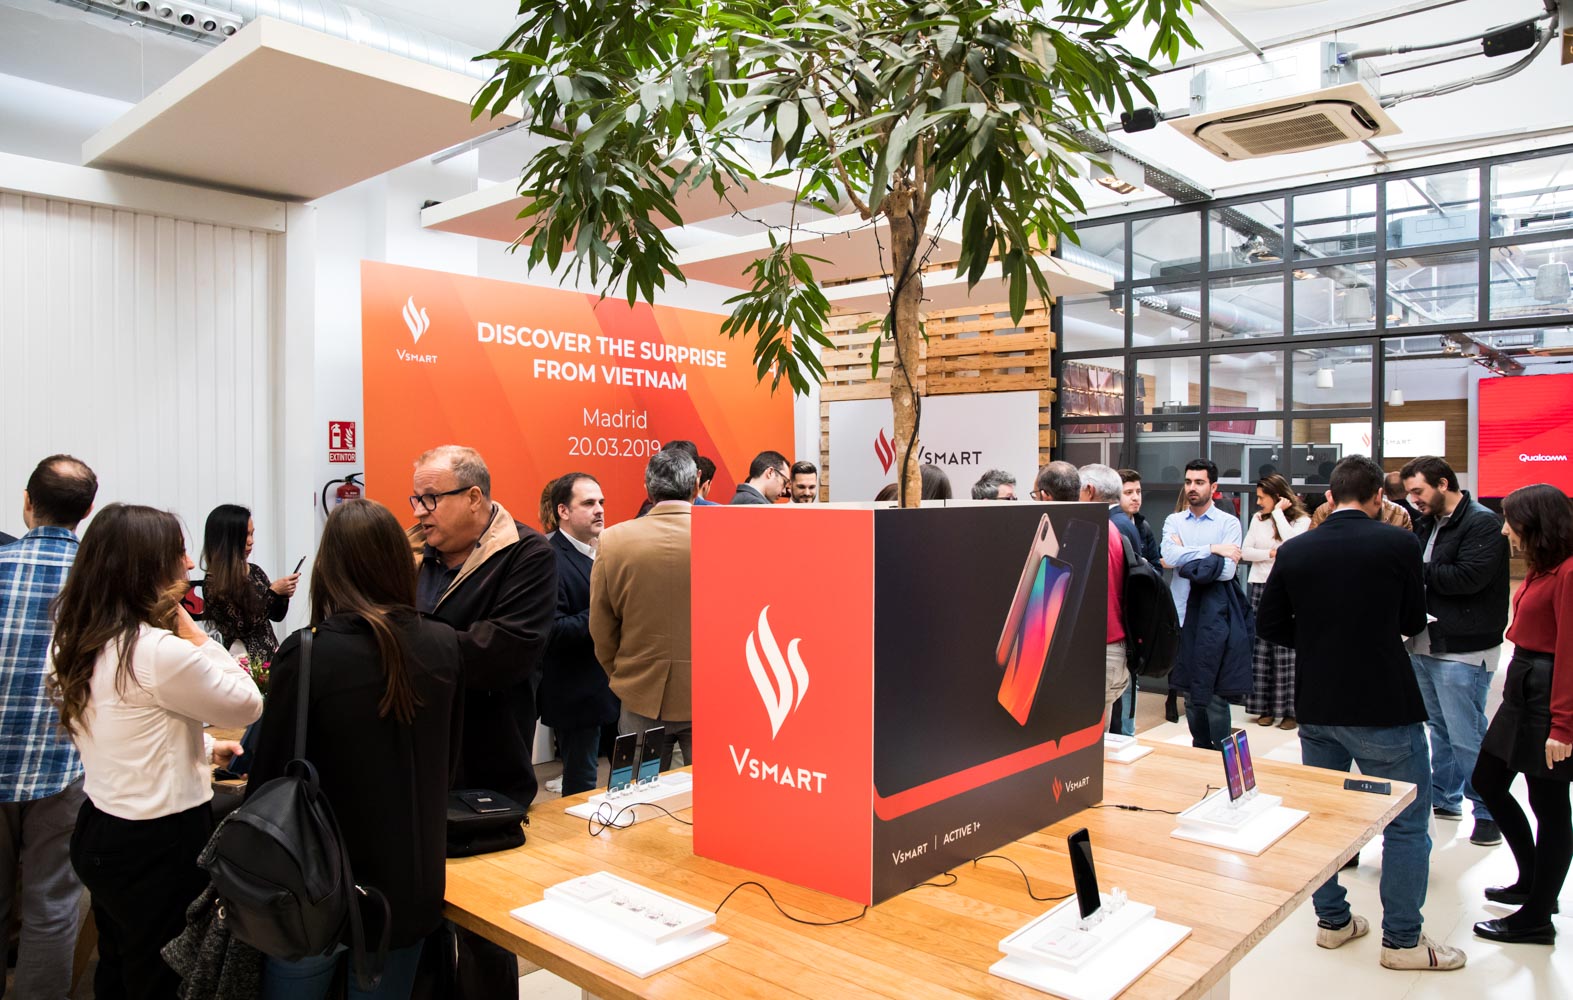 Phân phối Vsmart tại Tây Ban Nha: Vsmart là thương hiệu danh tiếng trong lĩnh vực thiết bị nhà thông minh. Hiện nay, Vsmart đã có mặt tại Tây Ban Nha, mang đến cho người tiêu dùng một lựa chọn tuyệt vời để nâng cao giá trị của căn nhà của mình.